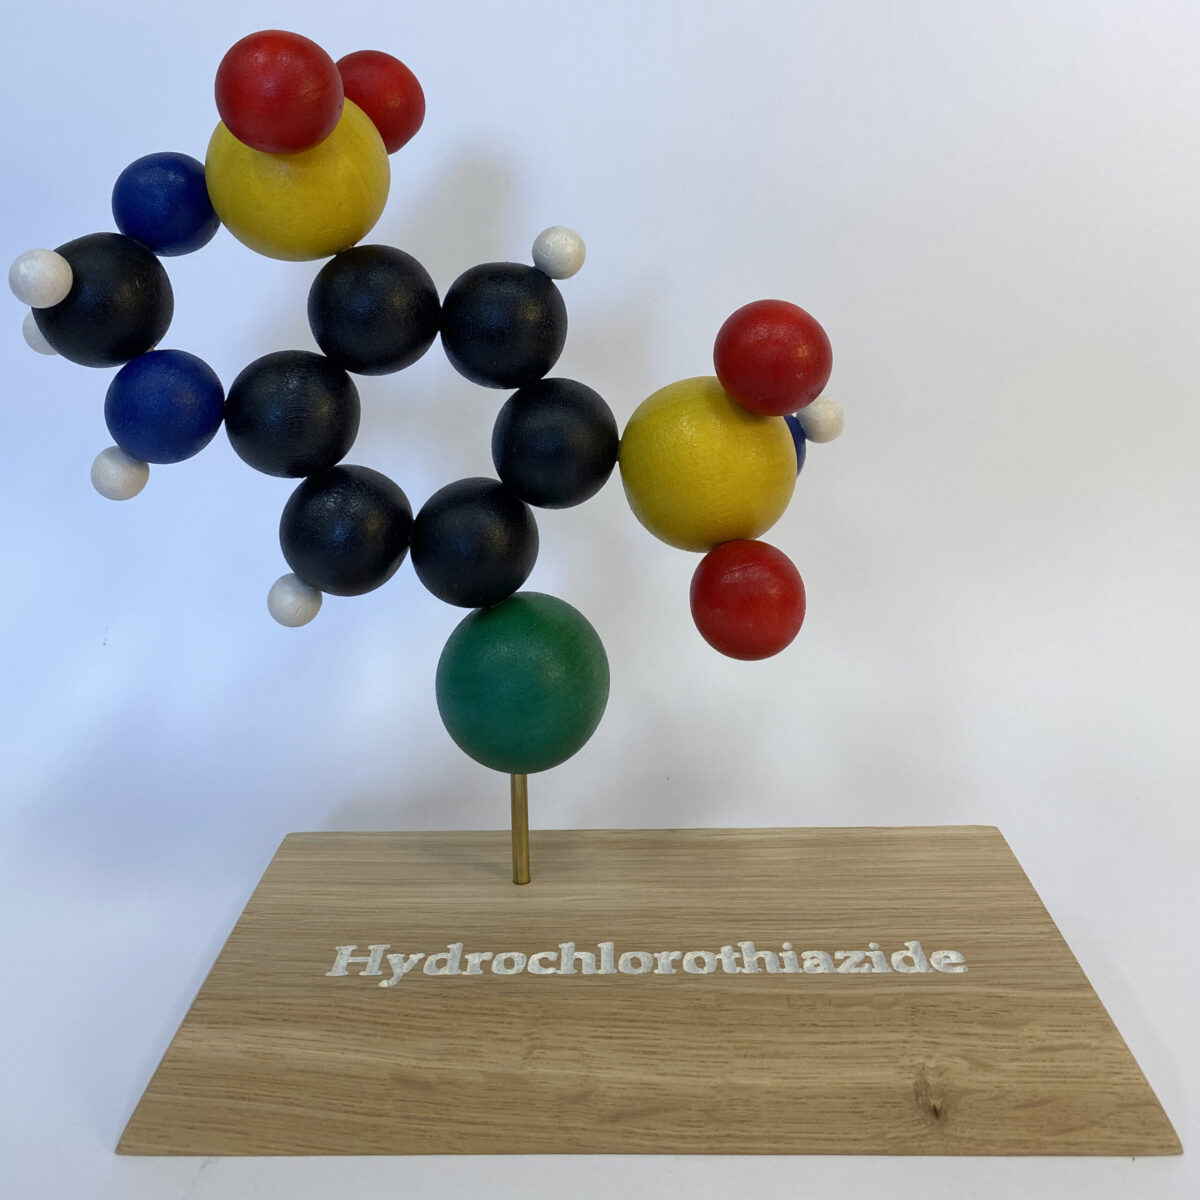 Hydrochlorothiazide molecule model